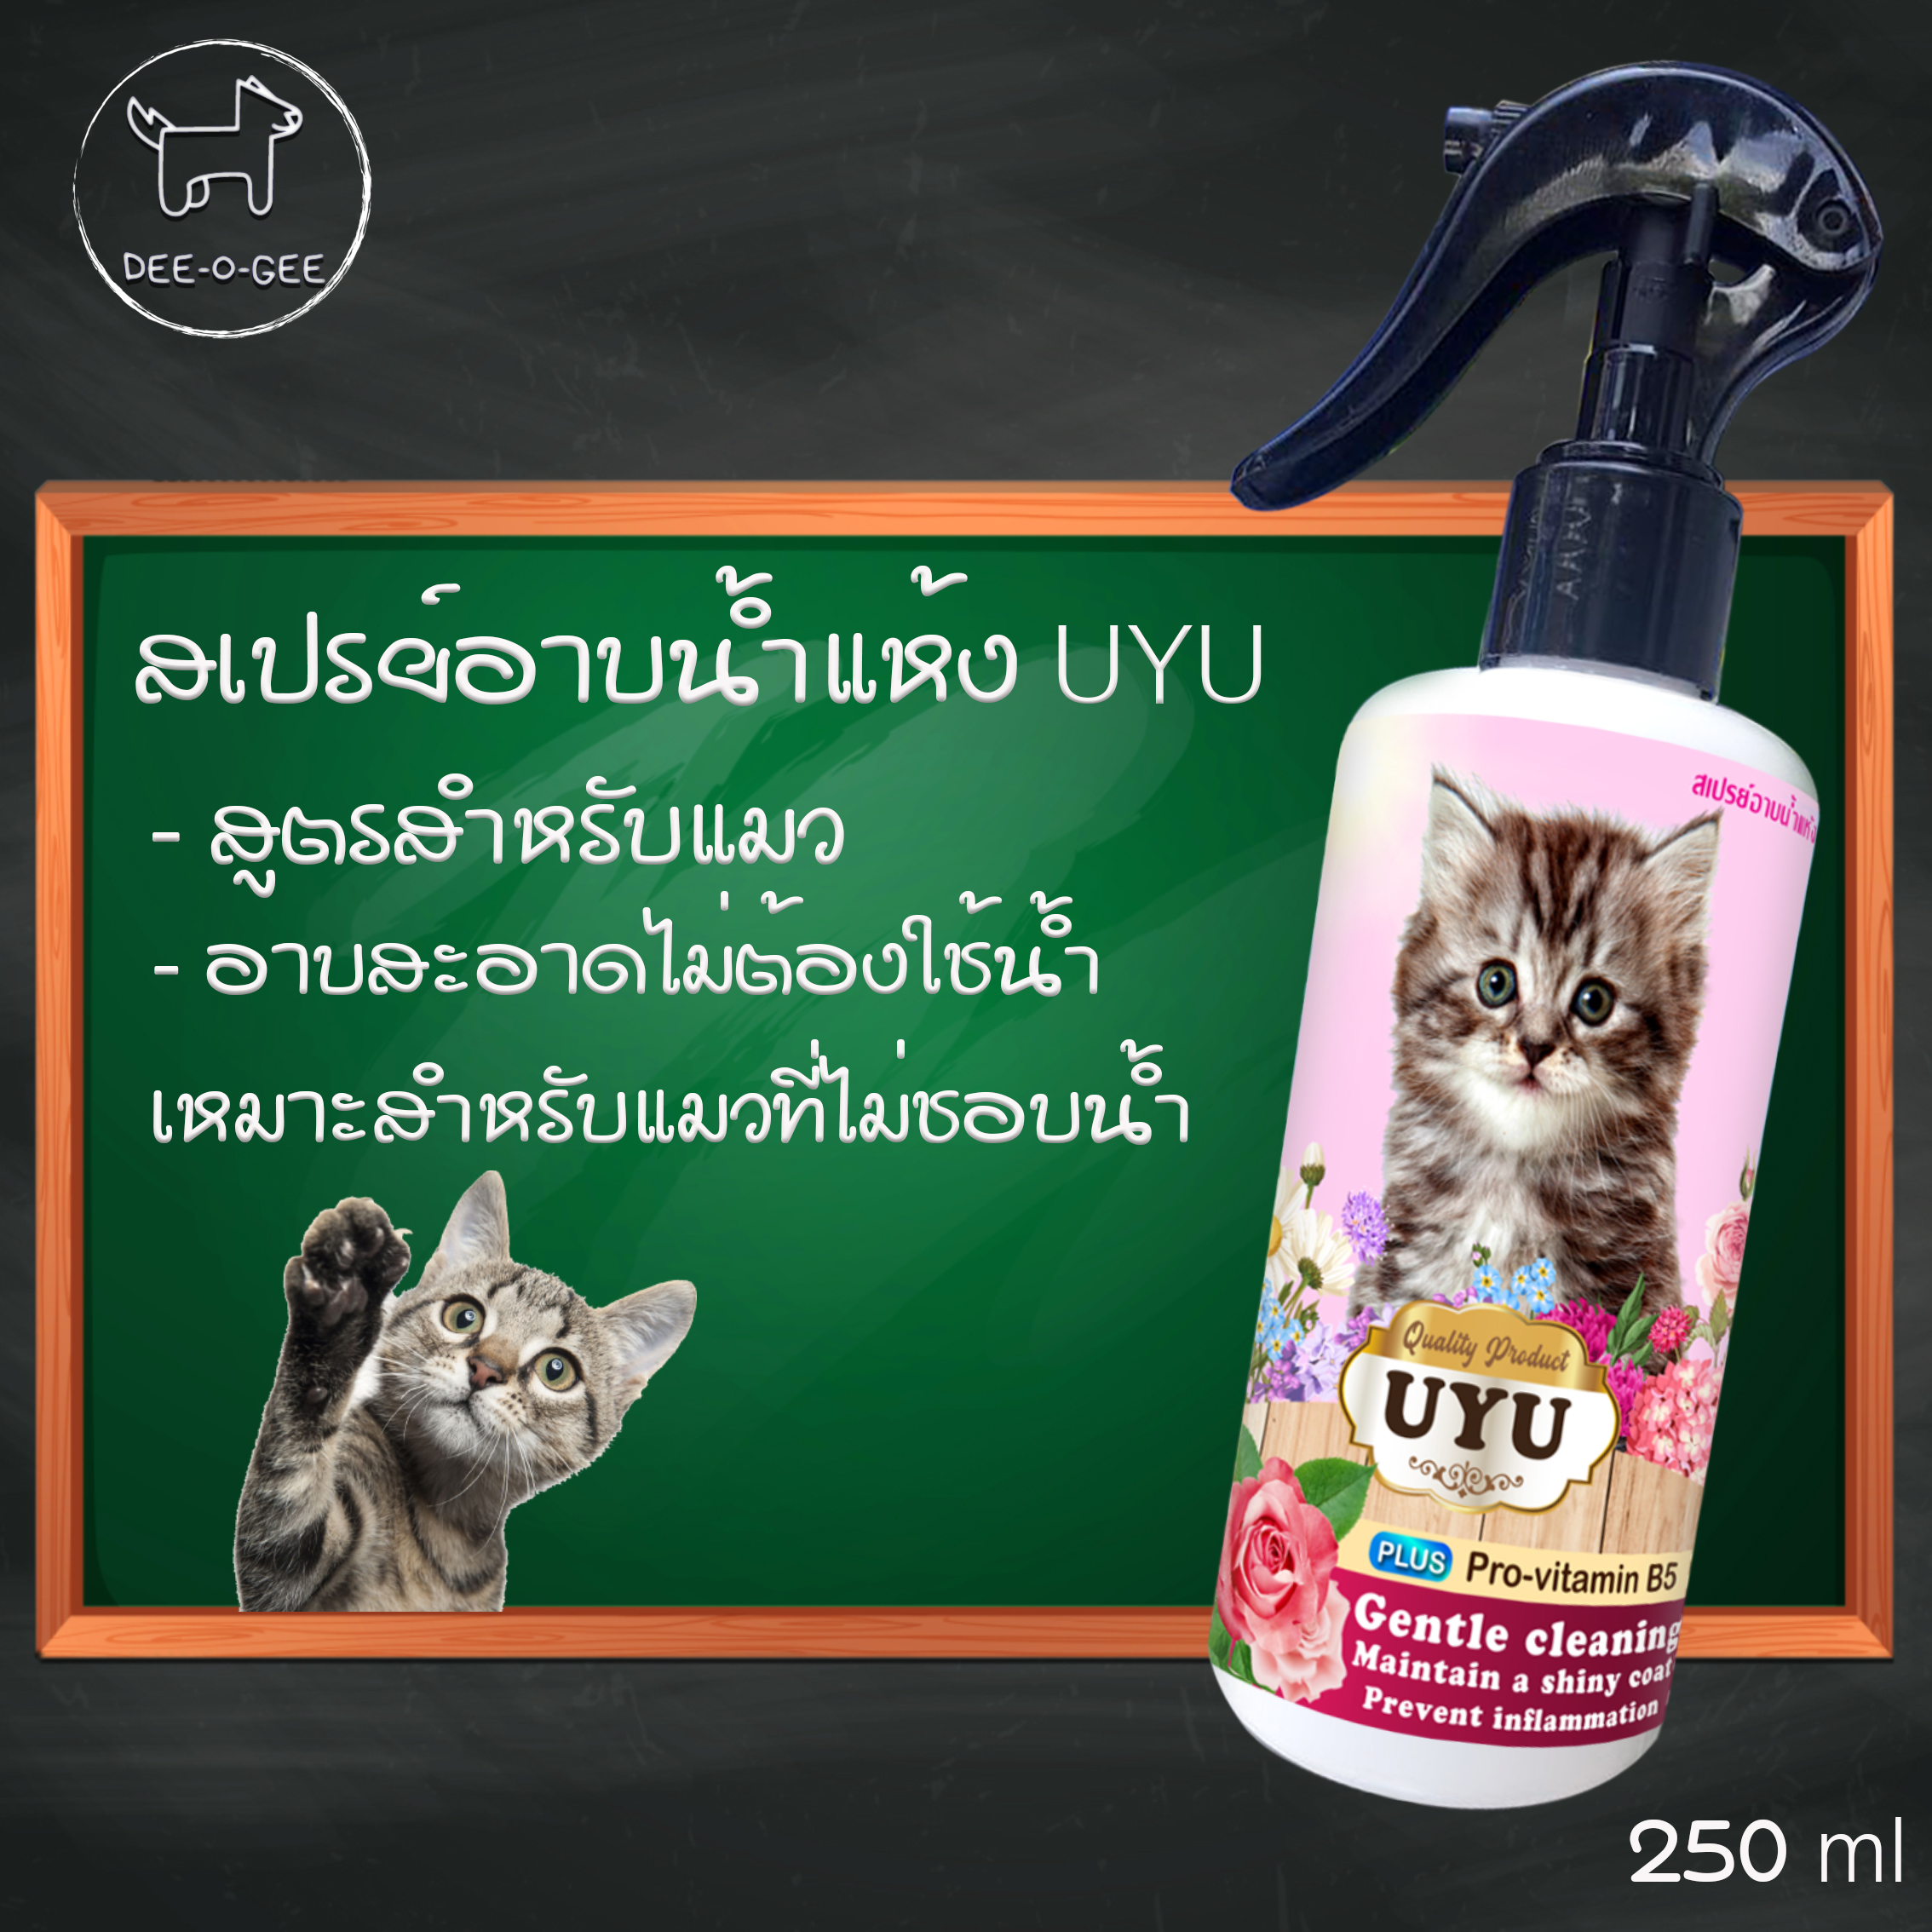 🚩 อาบน้ำแห้งน้องแมว (กลิ่นกุหลาบ) ไม่ต้องใช้น้ำ ขนฟูนุ่มน่ากอด กลิ่นหอม บำรุงขน สามารถเลียได้ ไม่มีสารเคมีอันตราย 250 ml. คุ้มมากมาย